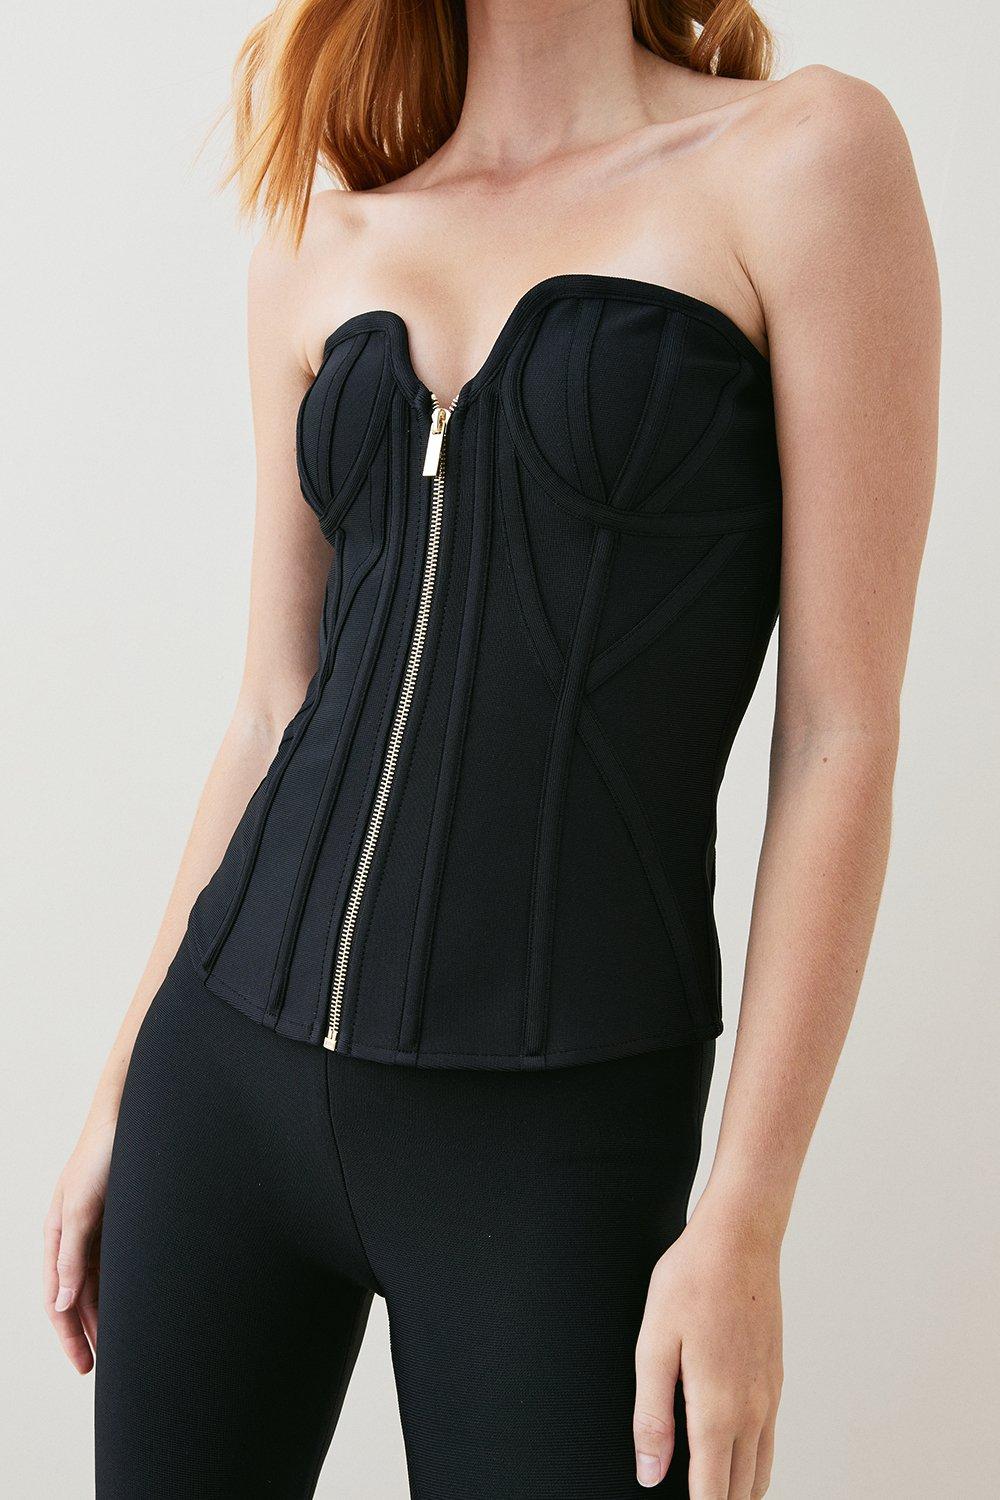 karen millen bandage corset mesh zip detail top -, black